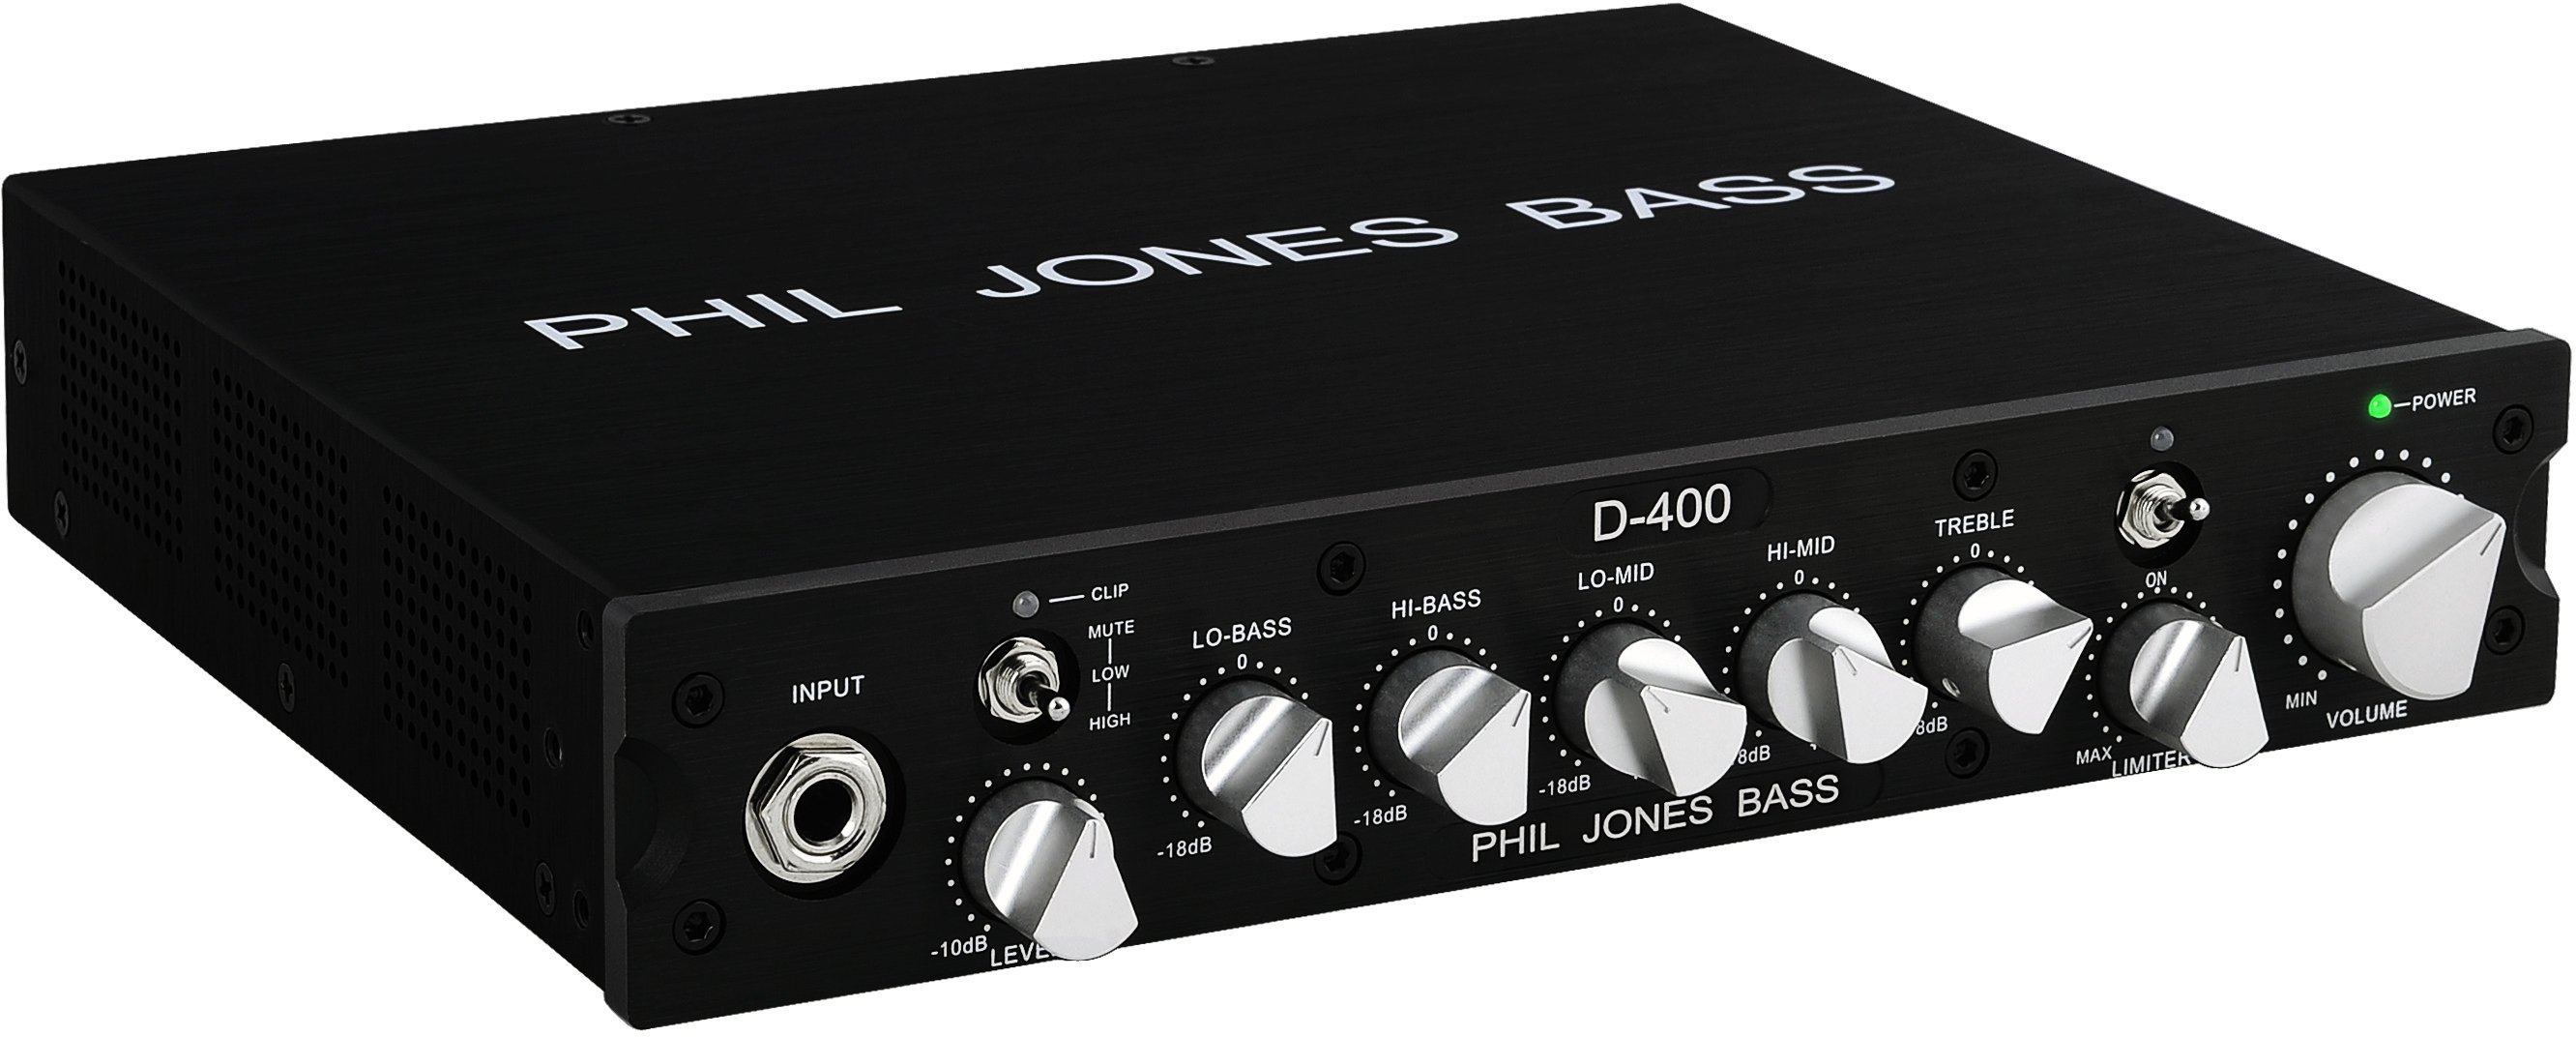 Phil Jones Bass D400 - 器材